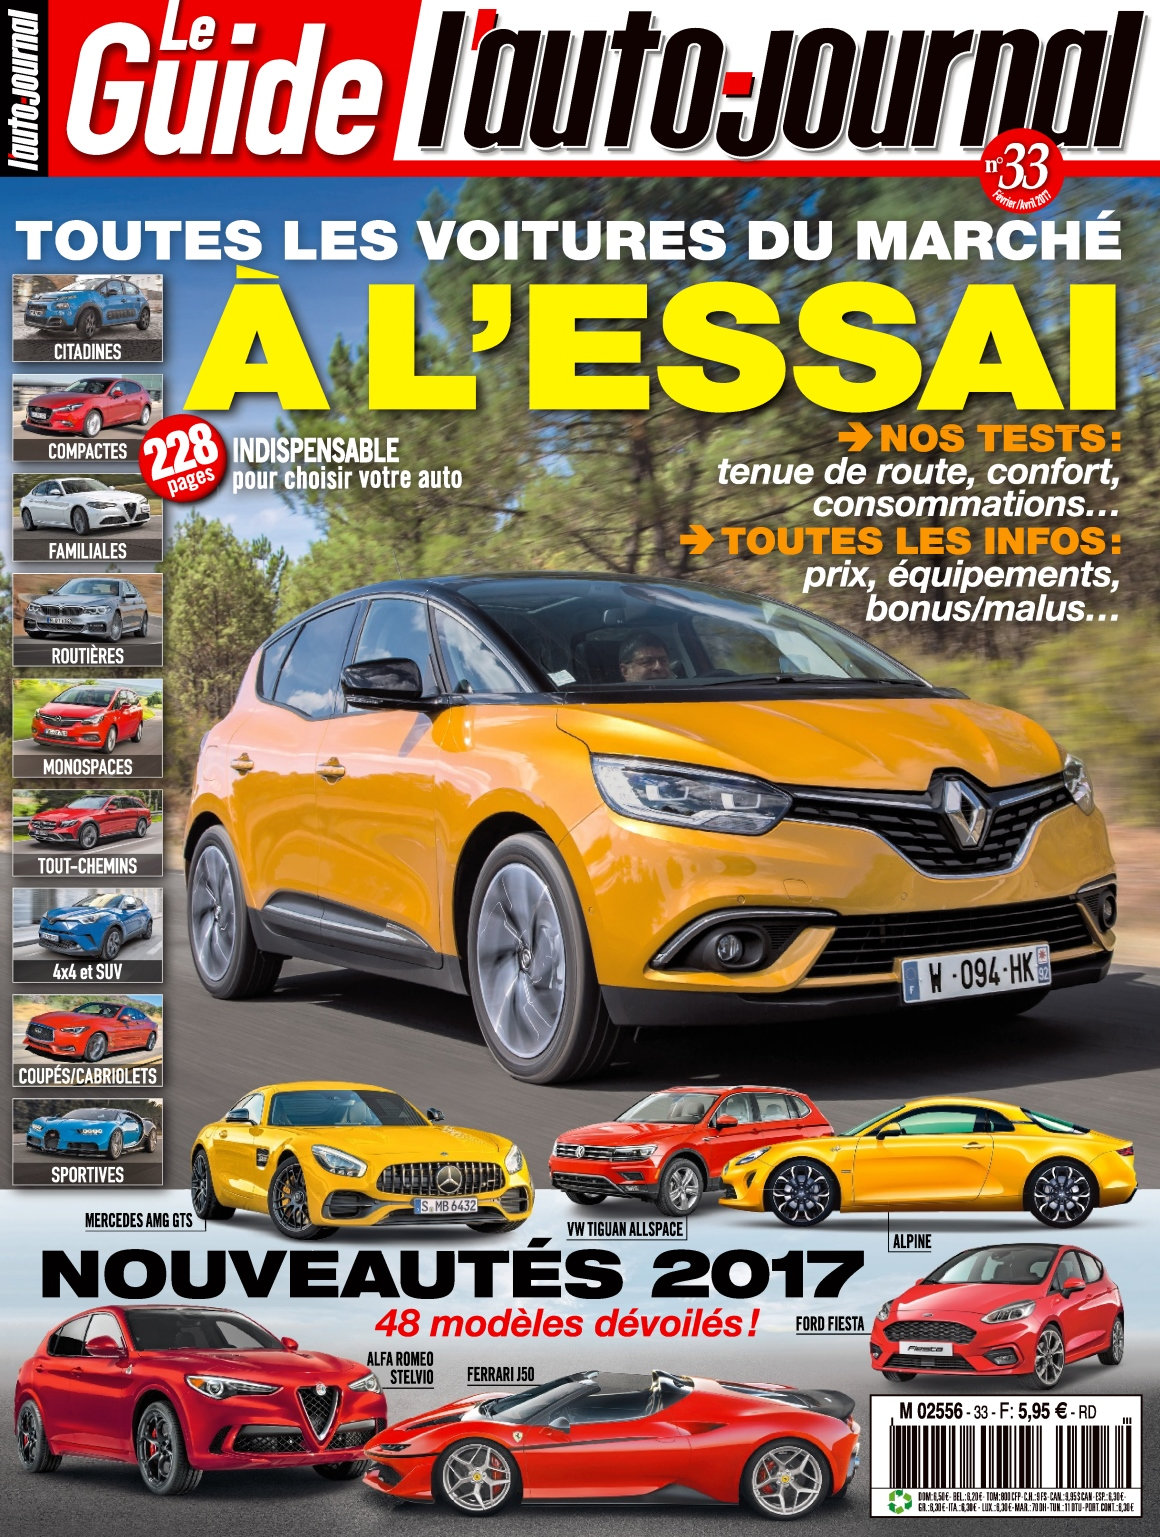 L'Auto-Journal Le Guide N°33- Février/Avril 2017 